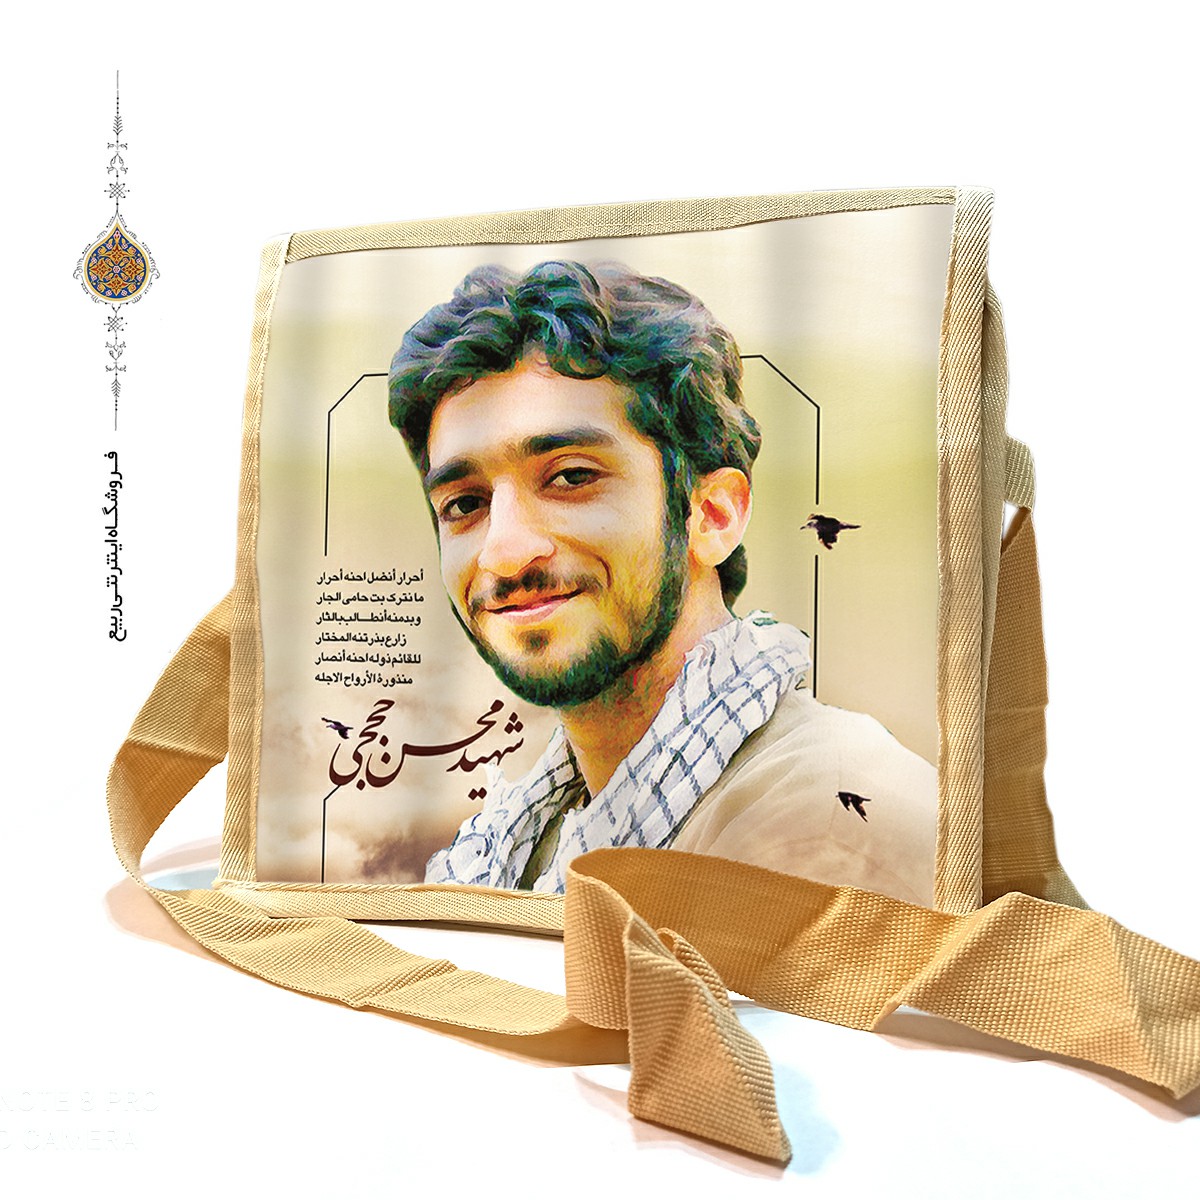 کیف دوشی با طرح شهید حججی